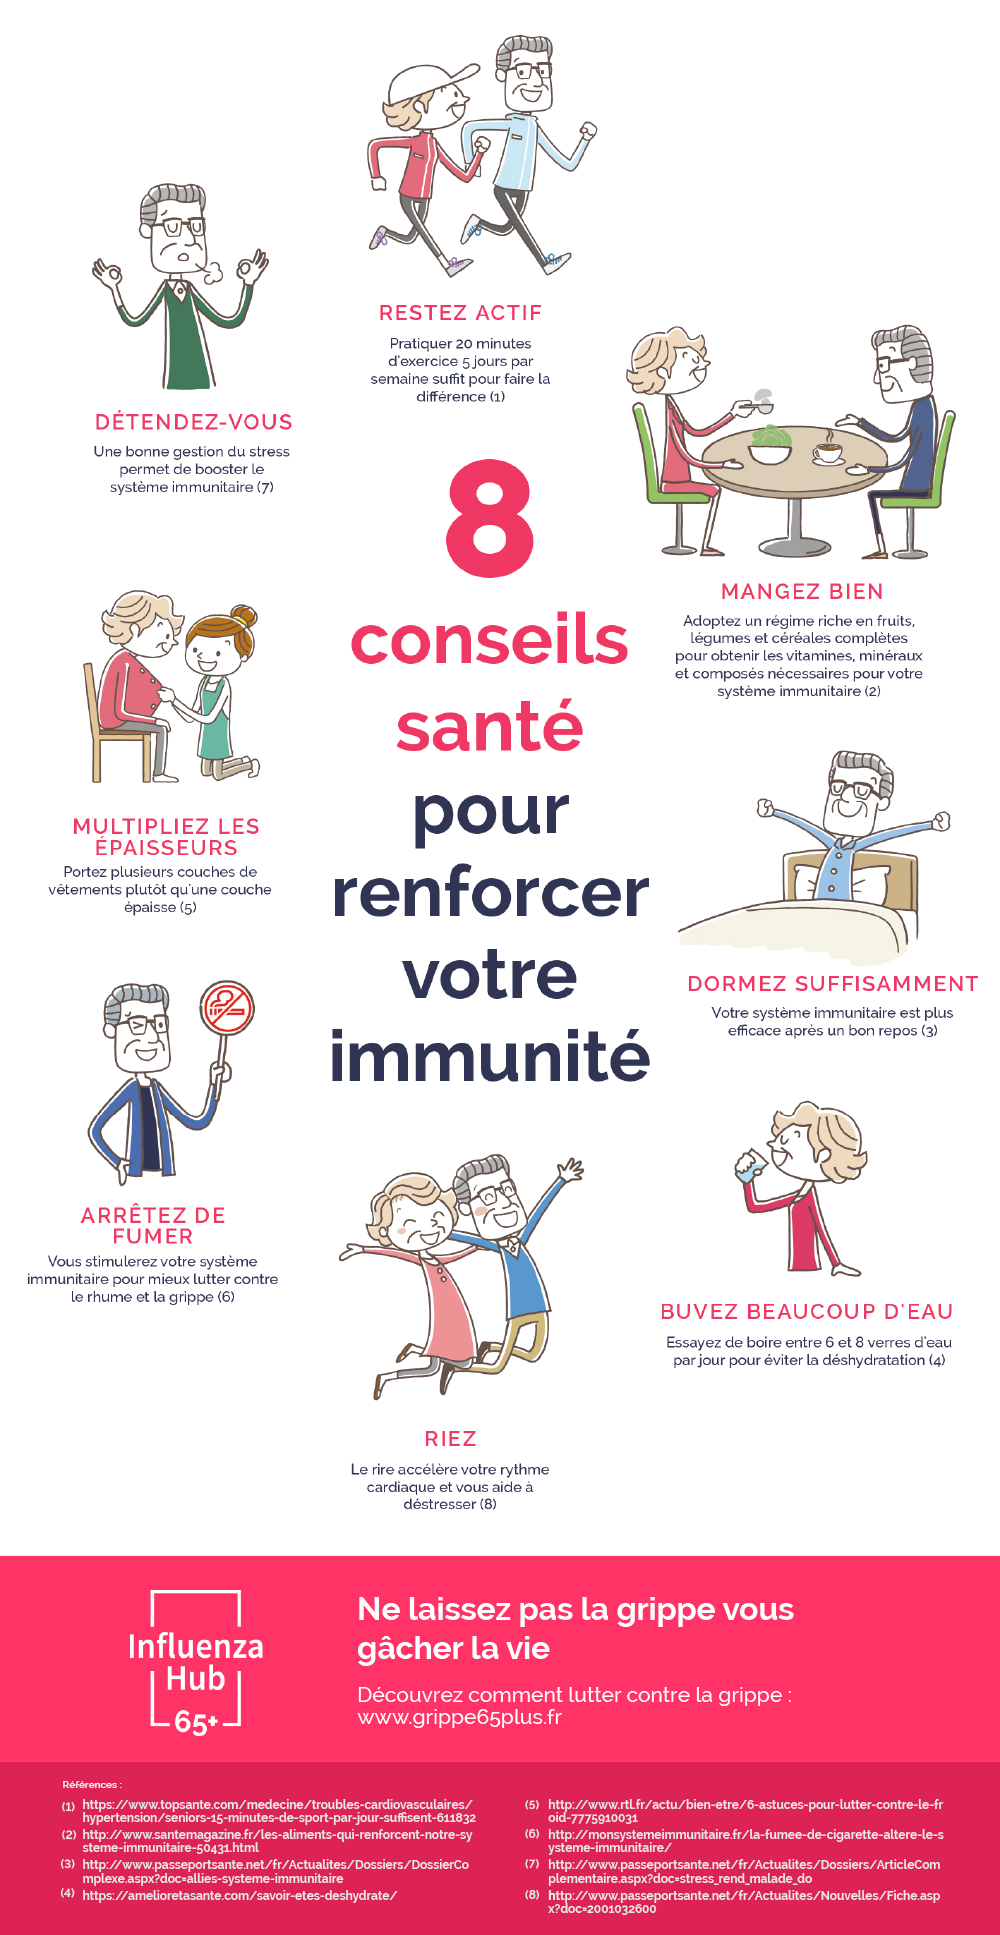 Système immunitaire : 8 conseils santé pour le renforcer